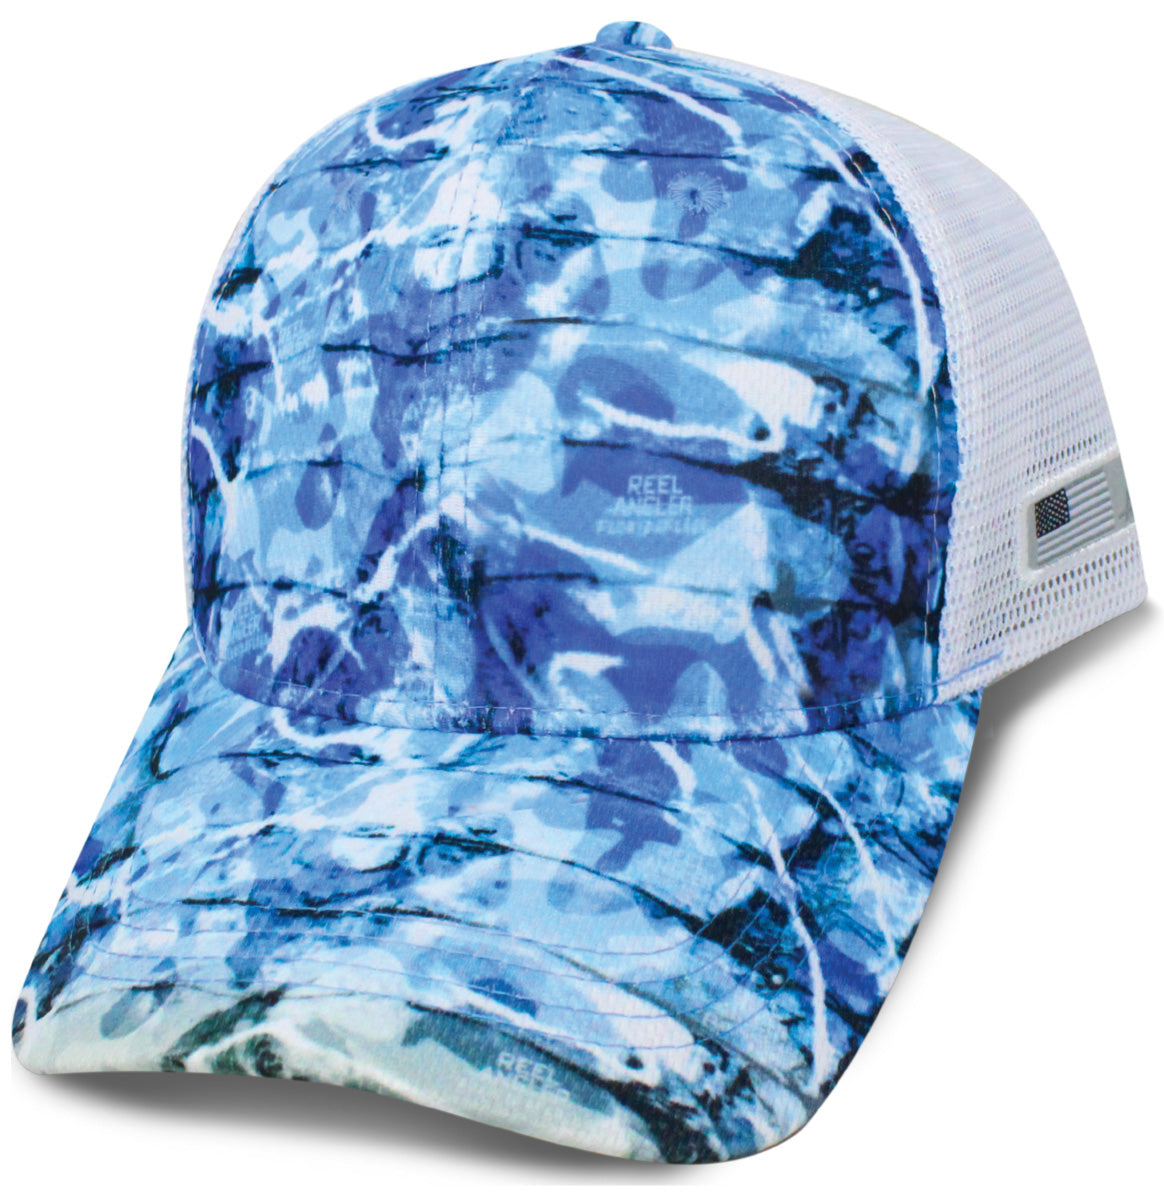 Reel Angler® Floridaflage™ White Mesh Back Blank